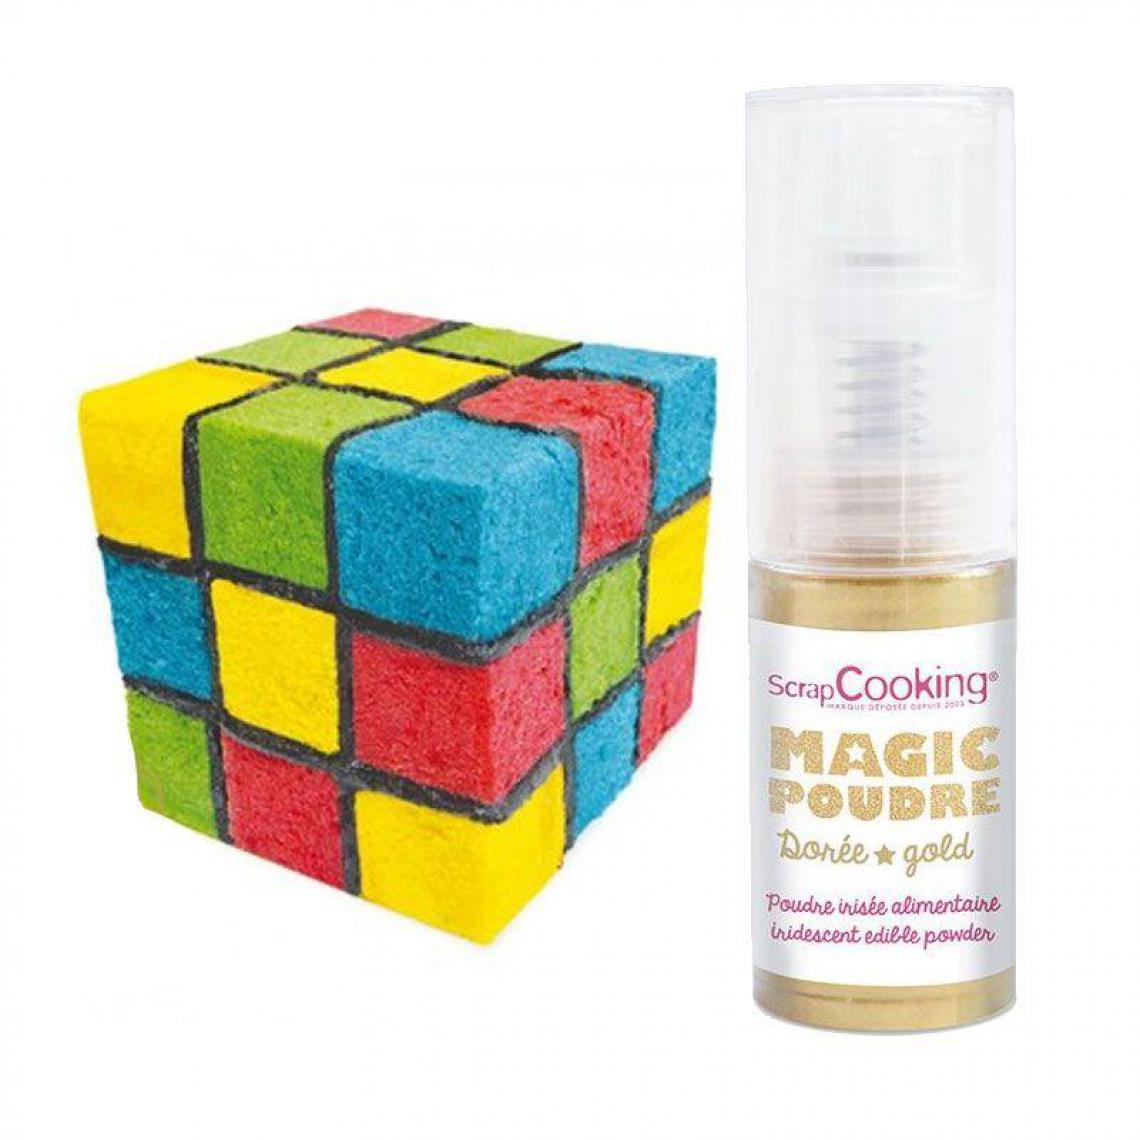 Scrapcooking - Kit gâteau Cube de couleurs + 1 poudre alimentaire irisée dorée - Kits créatifs